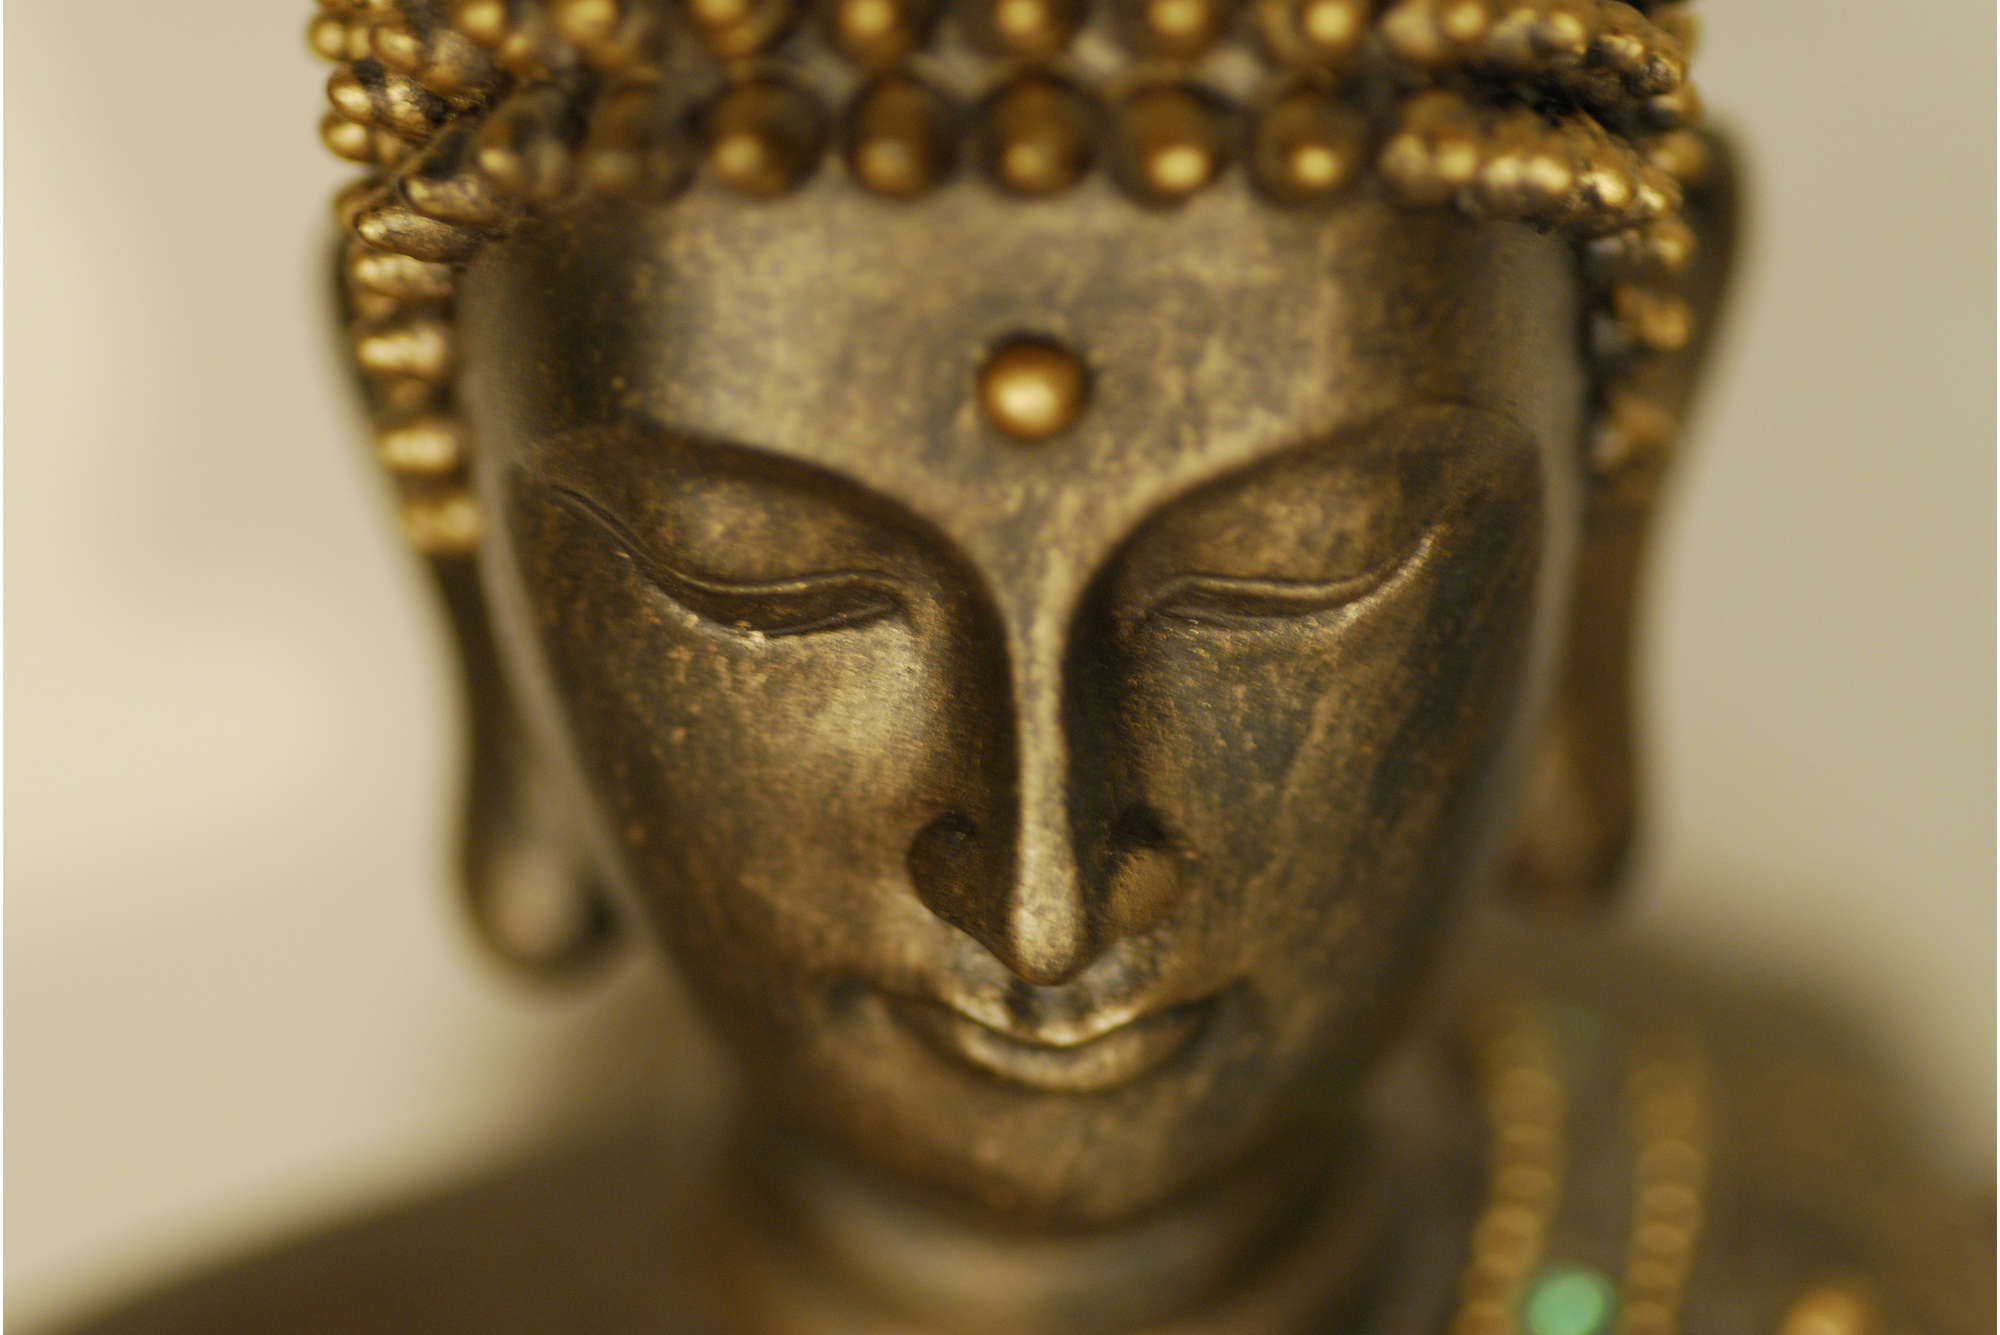             papiers peints à impression numérique gros plan de la figure de Bouddha - nacre intissé lisse
        